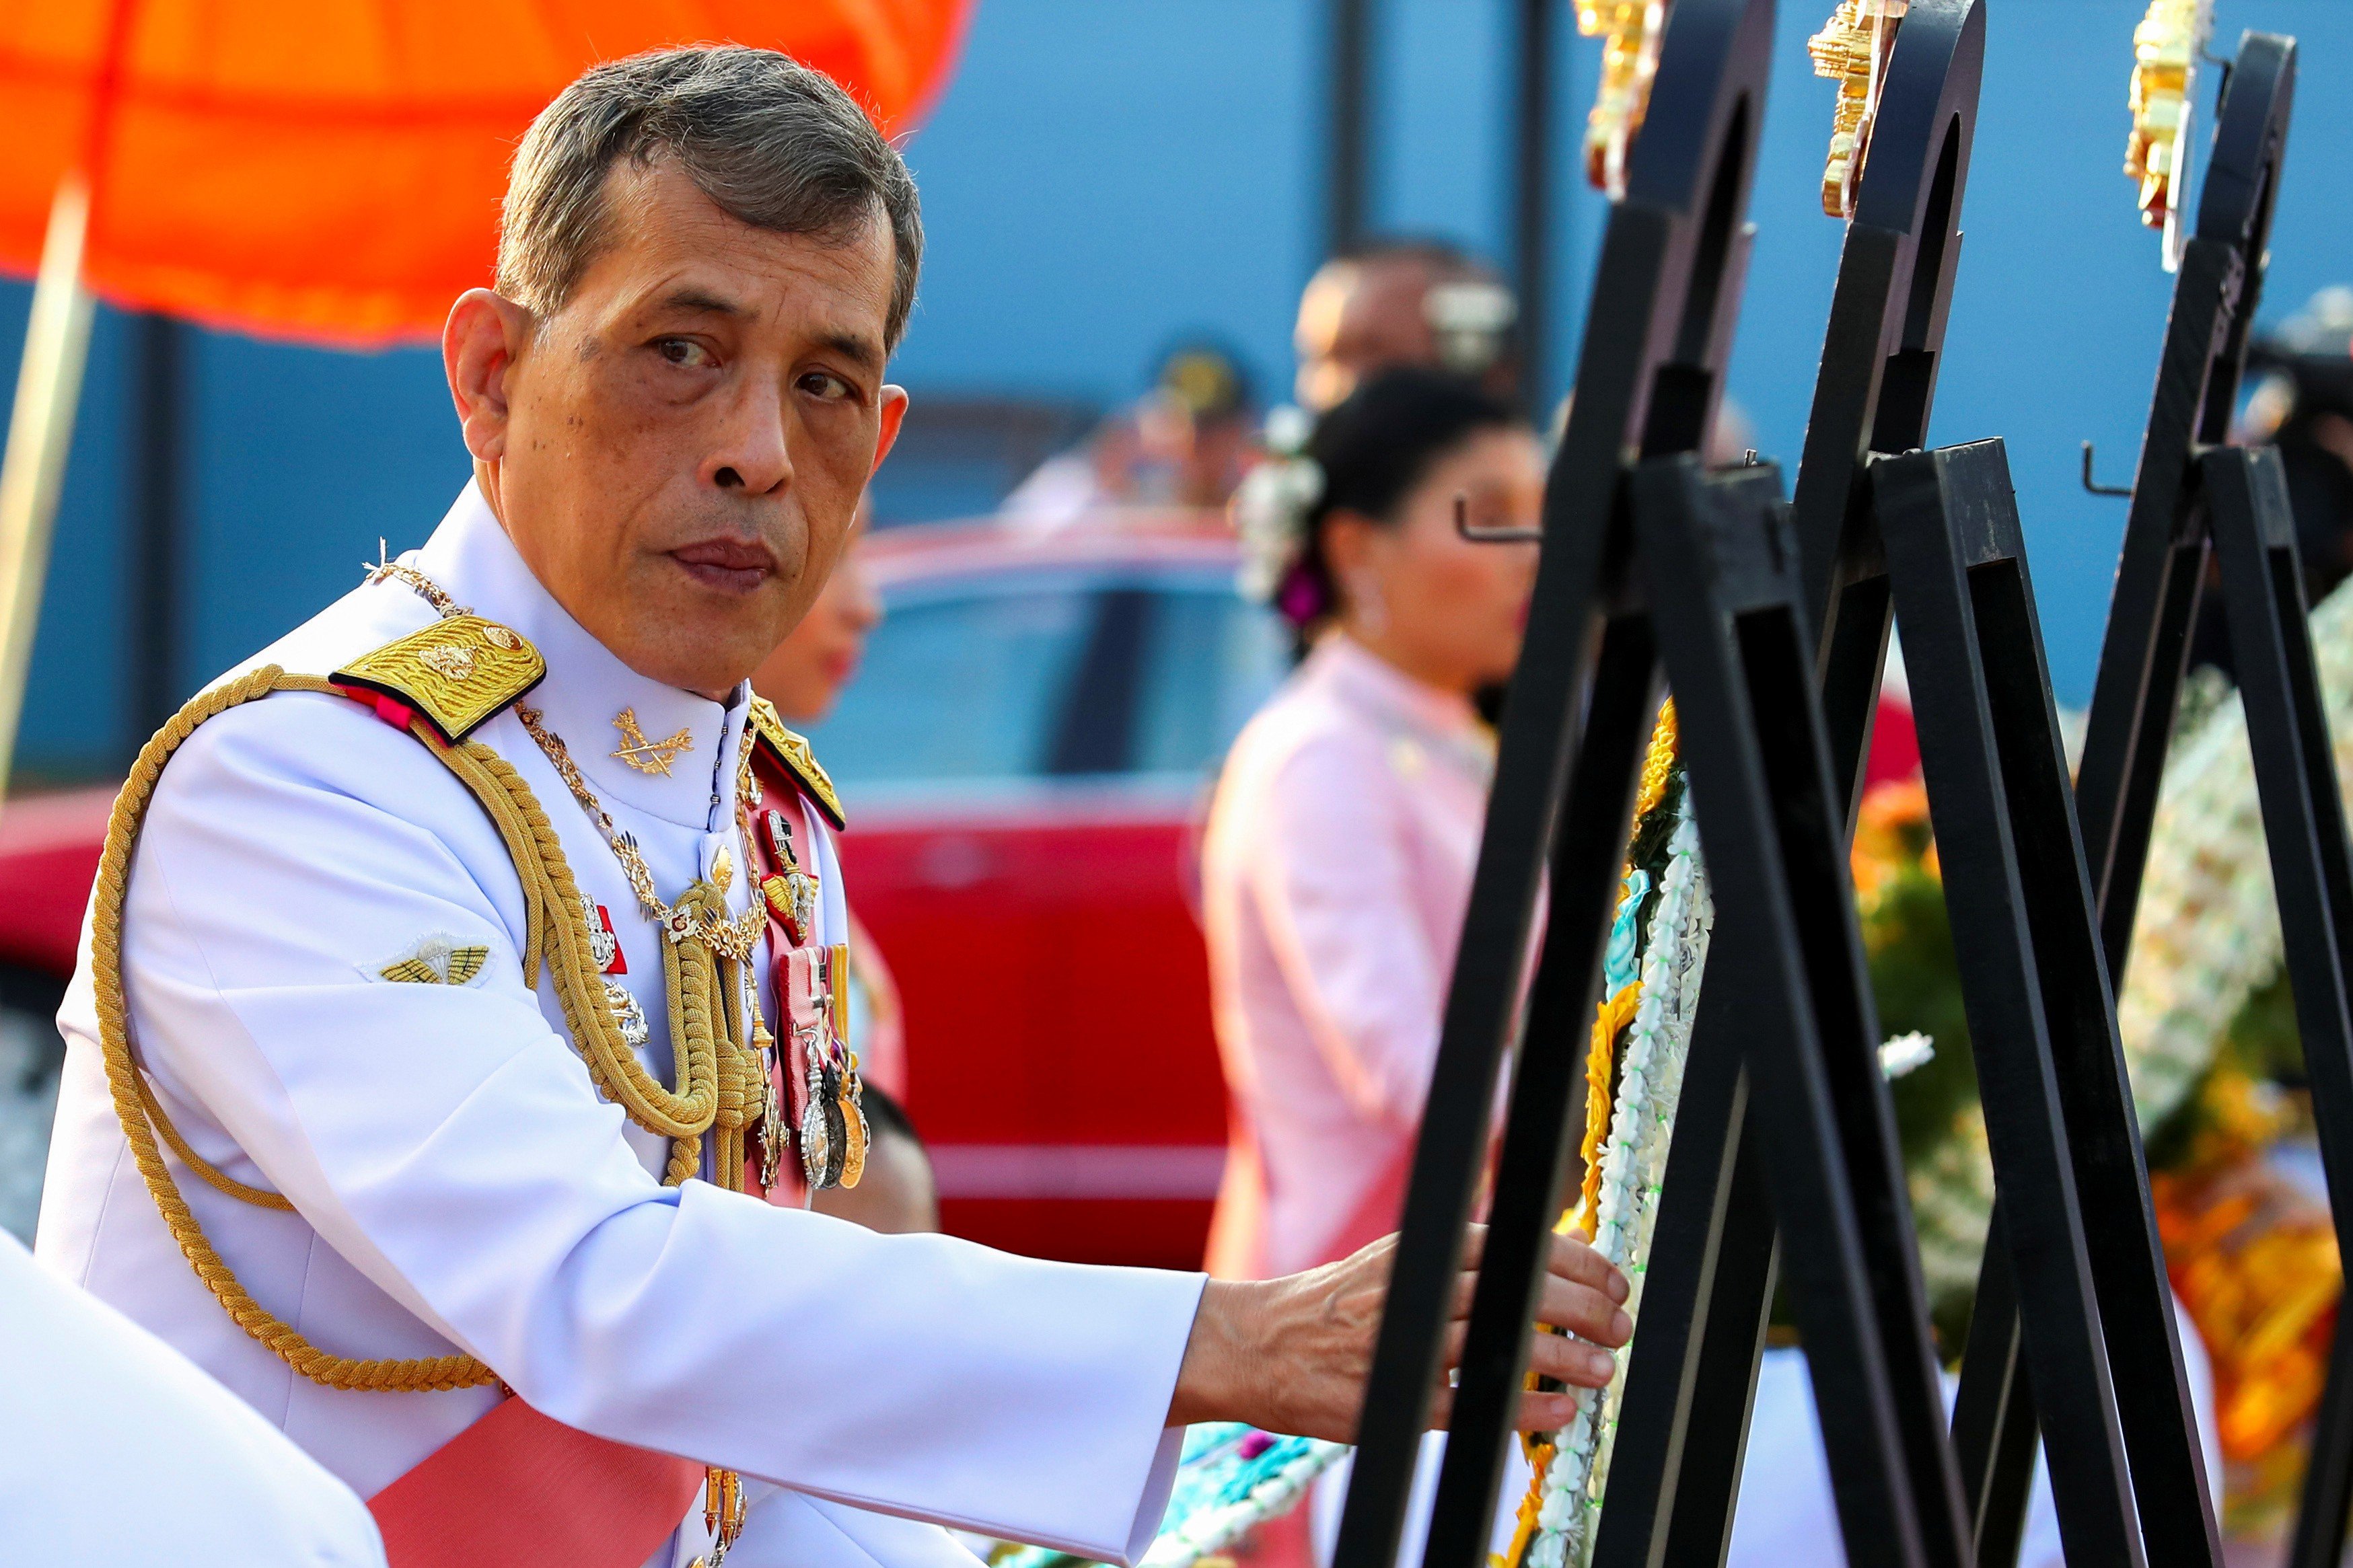 Thailand's King Maha Vajiralongkorn at an event commemorating the death of his father, King Chulalongkorn at the Royal Plaza in Bangkok on October 23, 2019. Photo: Reuters